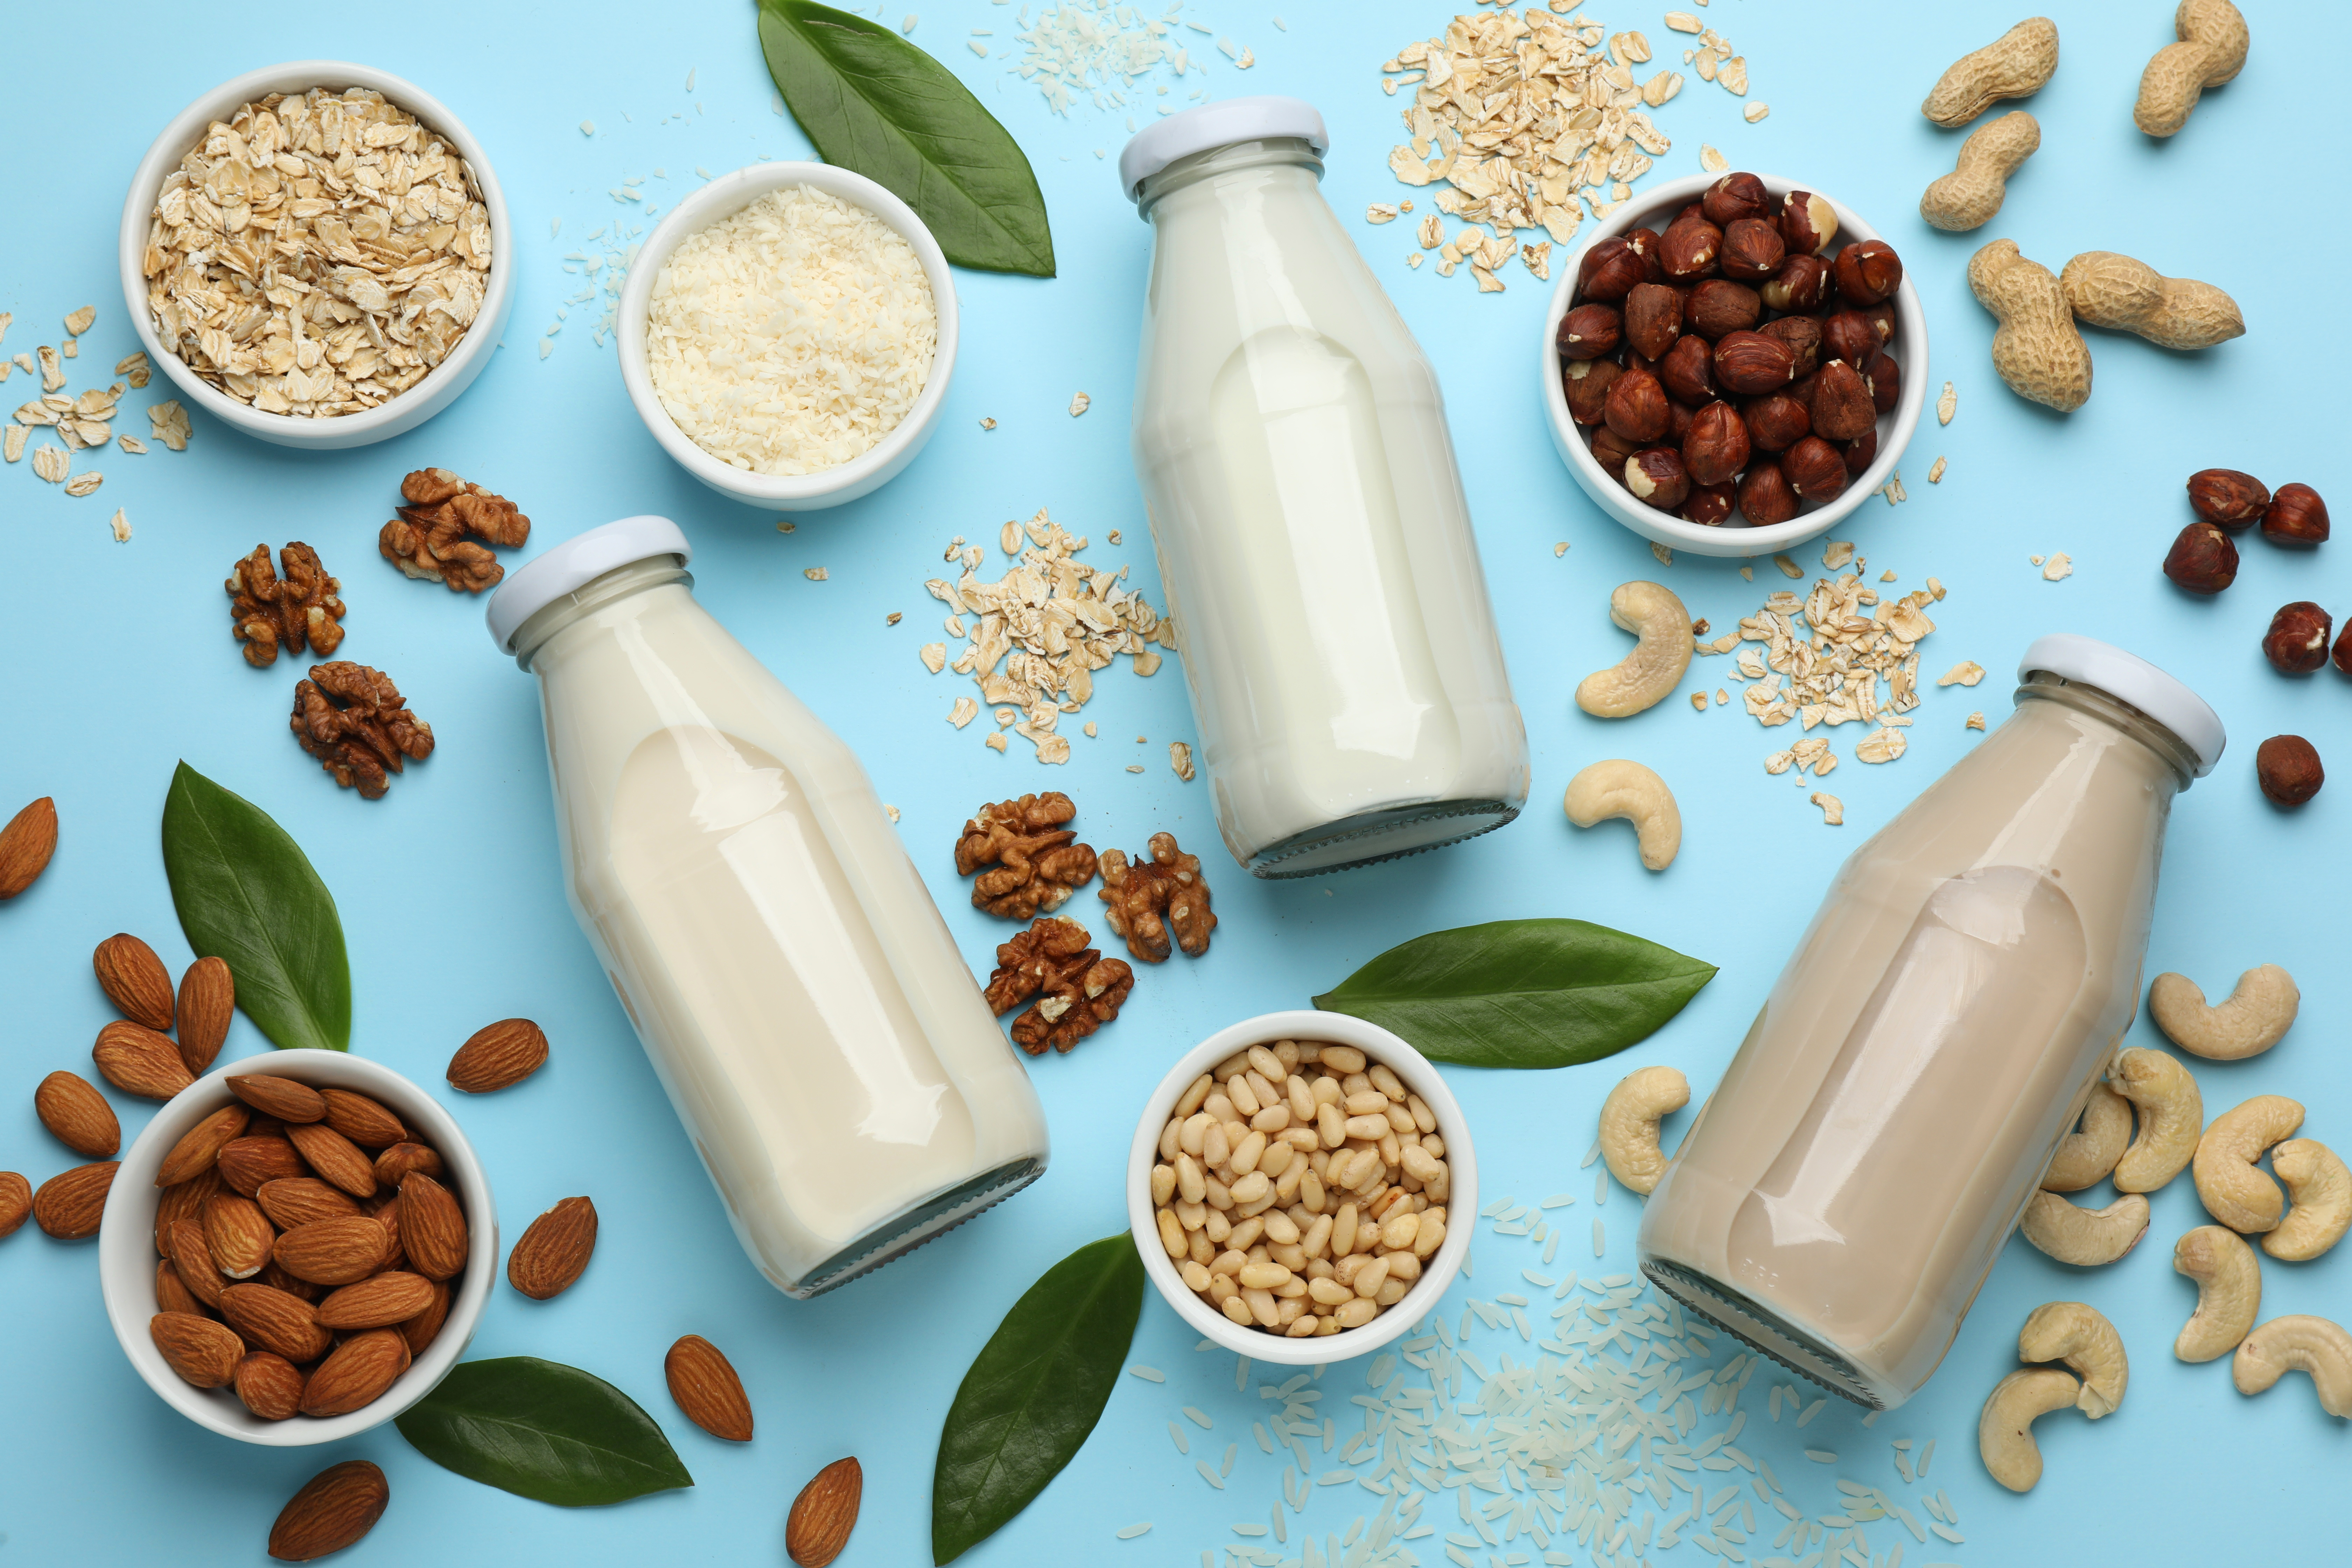 Il “latte” vegetale ei suoi potenziali rischi microbiologici nel contesto del cambiamento climatico